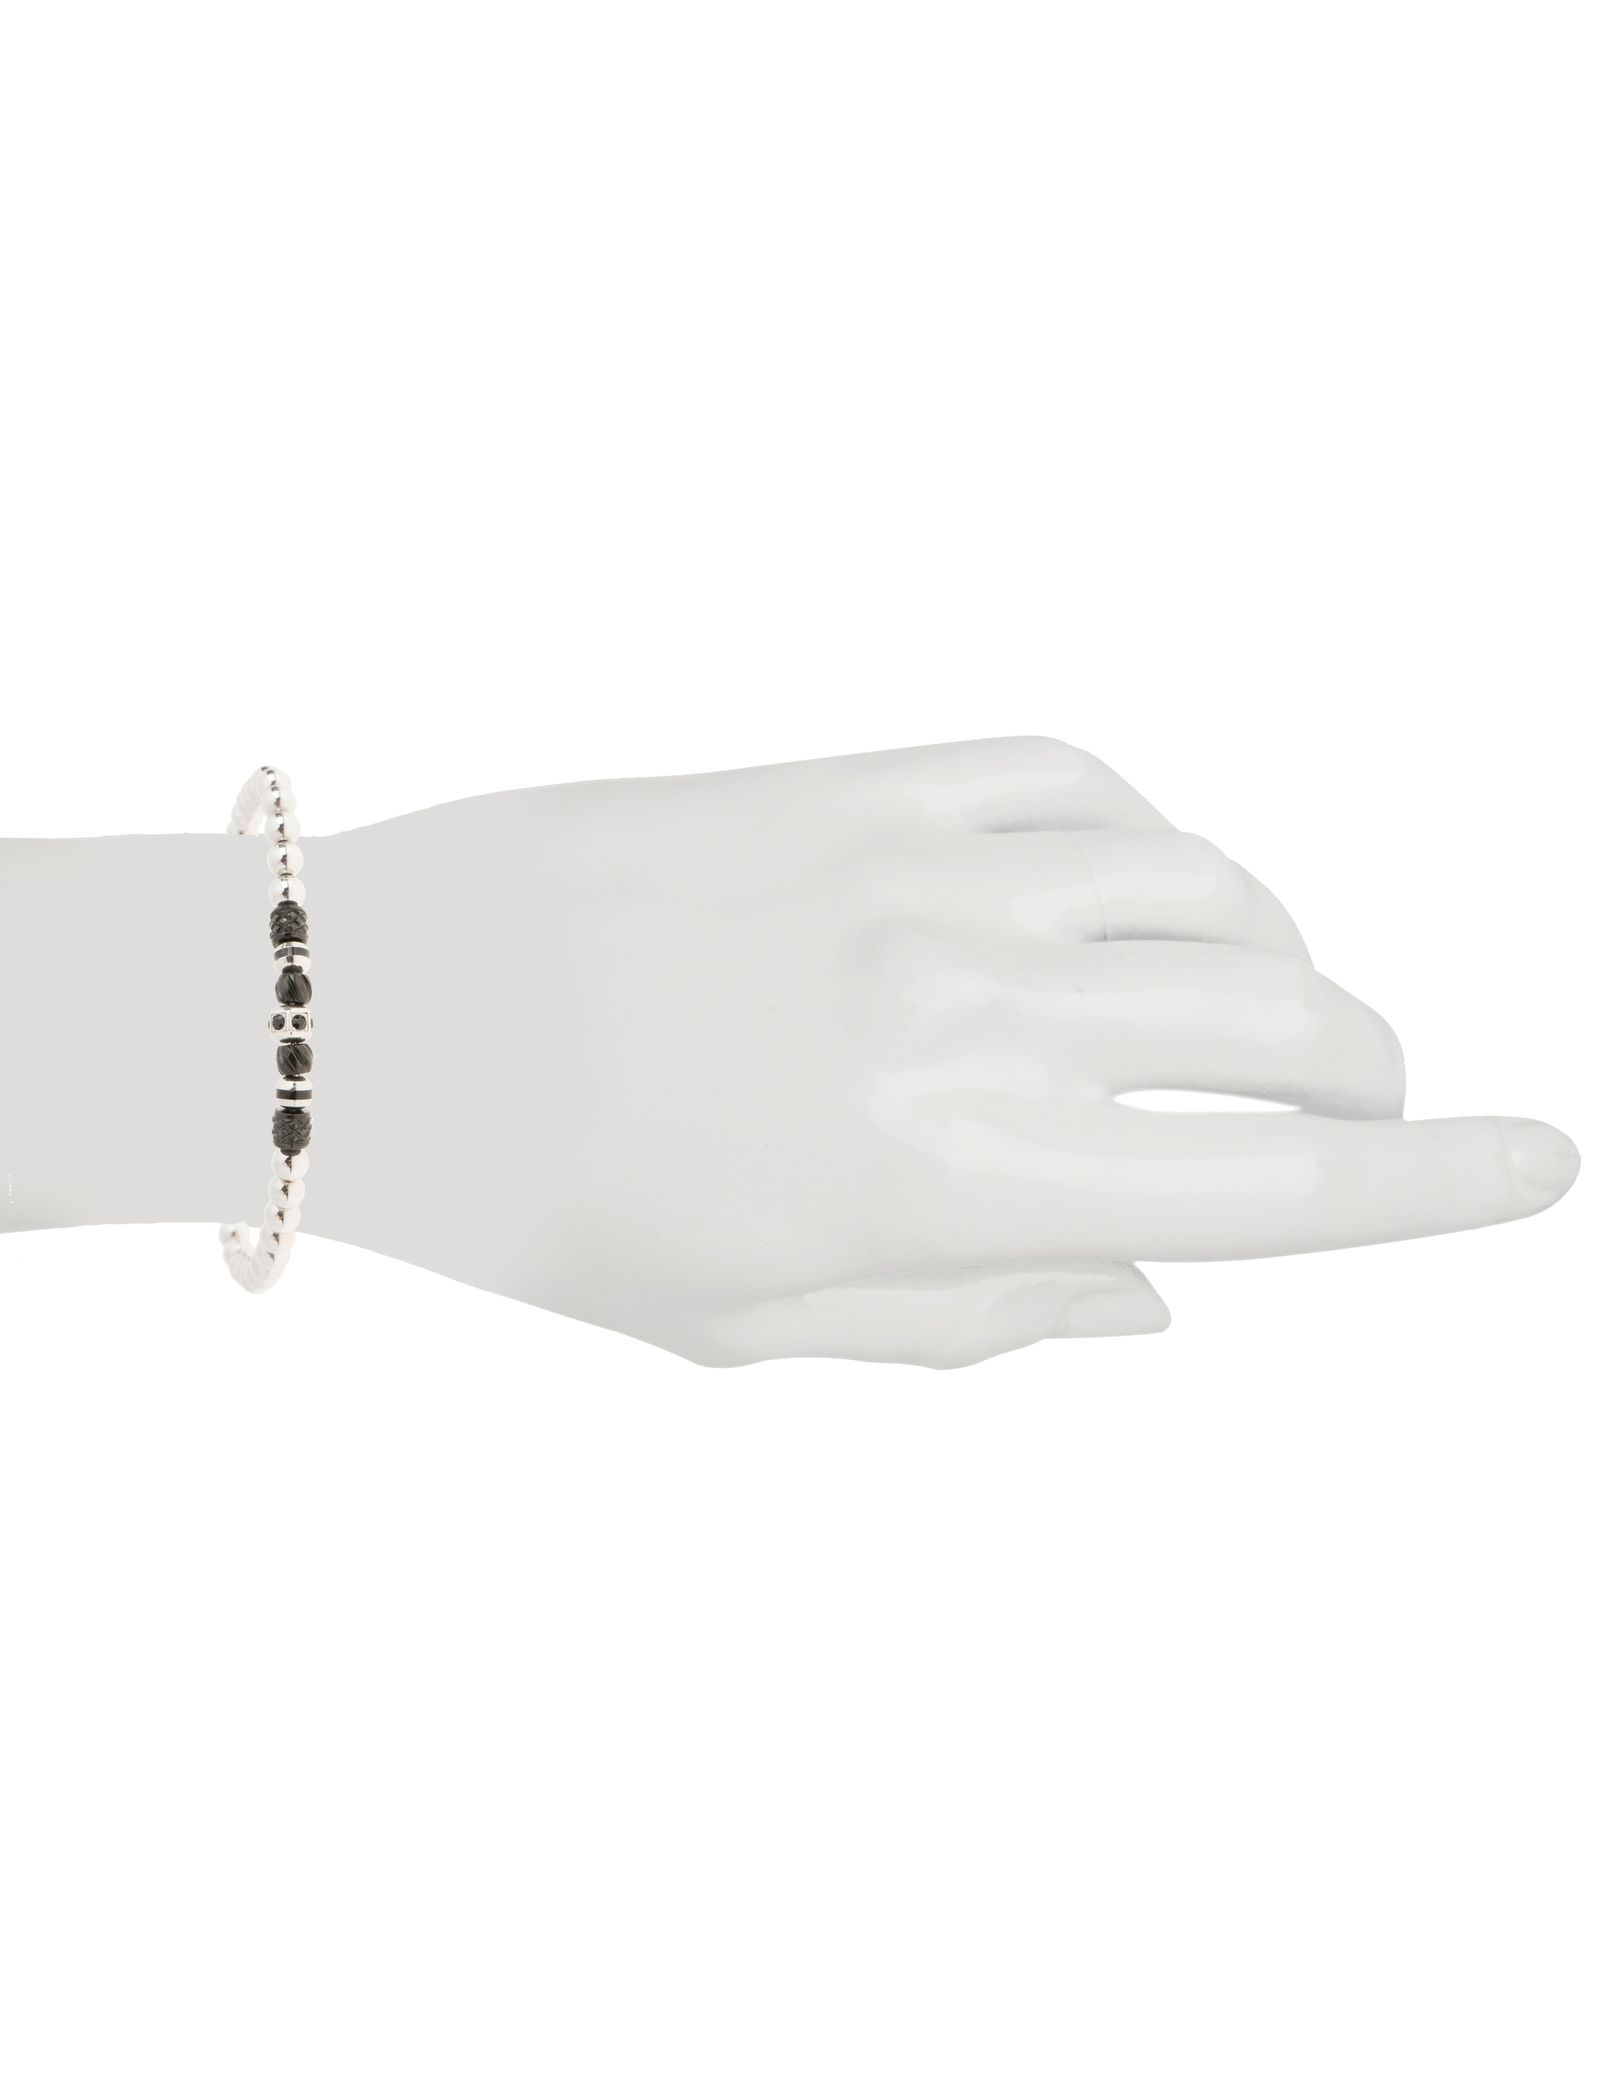 دستبند مهره ای مردانه - برازوی تک سایز - Silver - 4